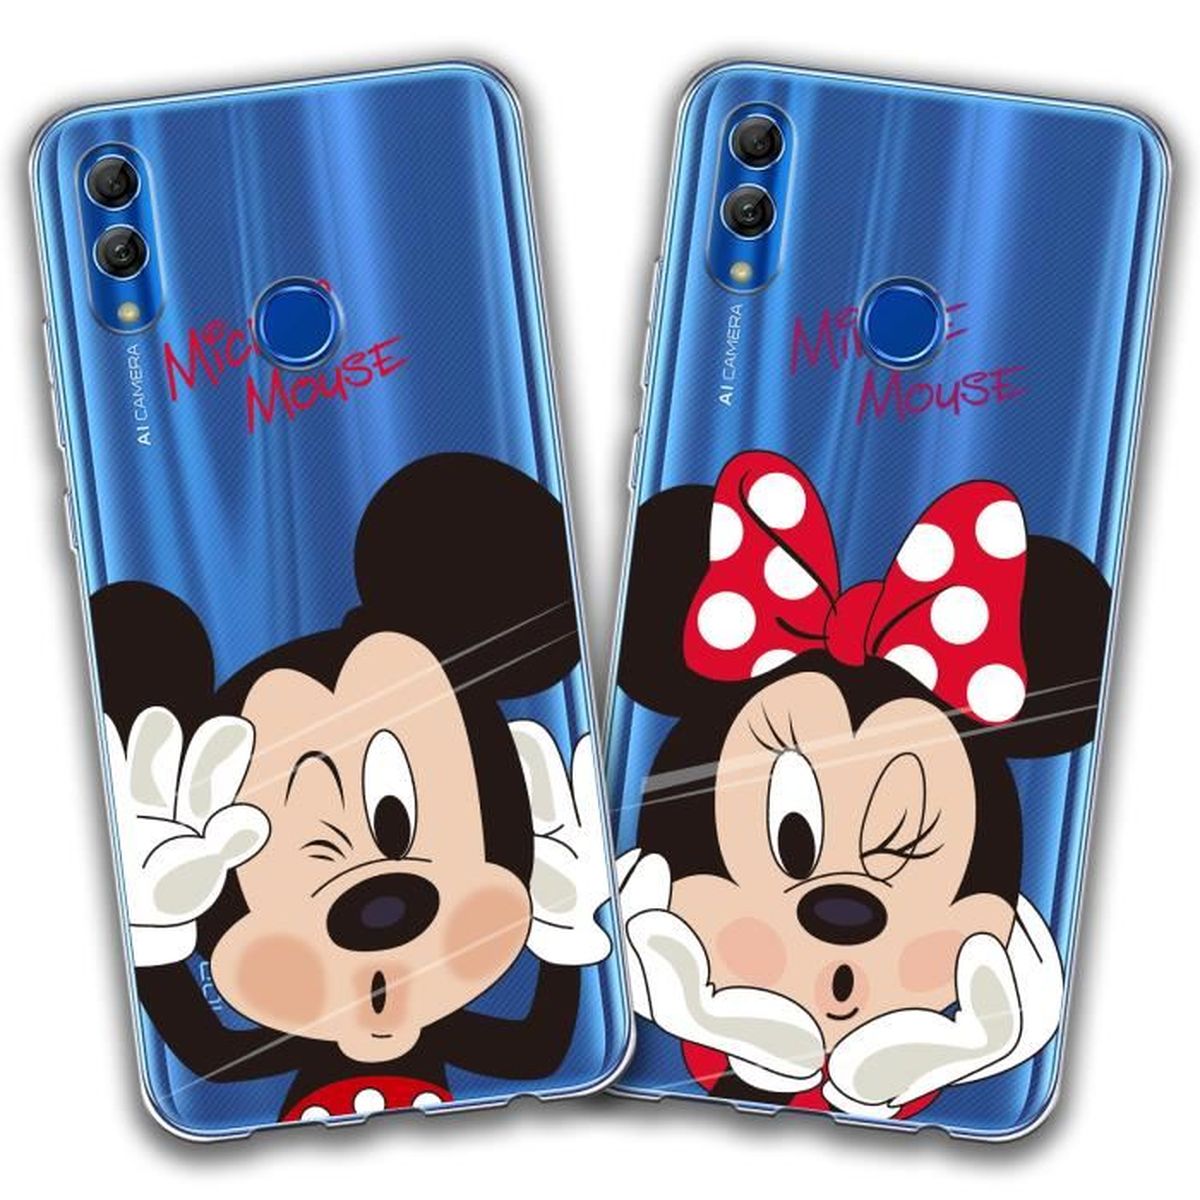 2 X Coque Huawei P Smart 2019 / Honor 10 Lite, Disney Mouse Doux Souple Transparent TPU Housse Étui Pour Huawei P Smart 2019 / Honor